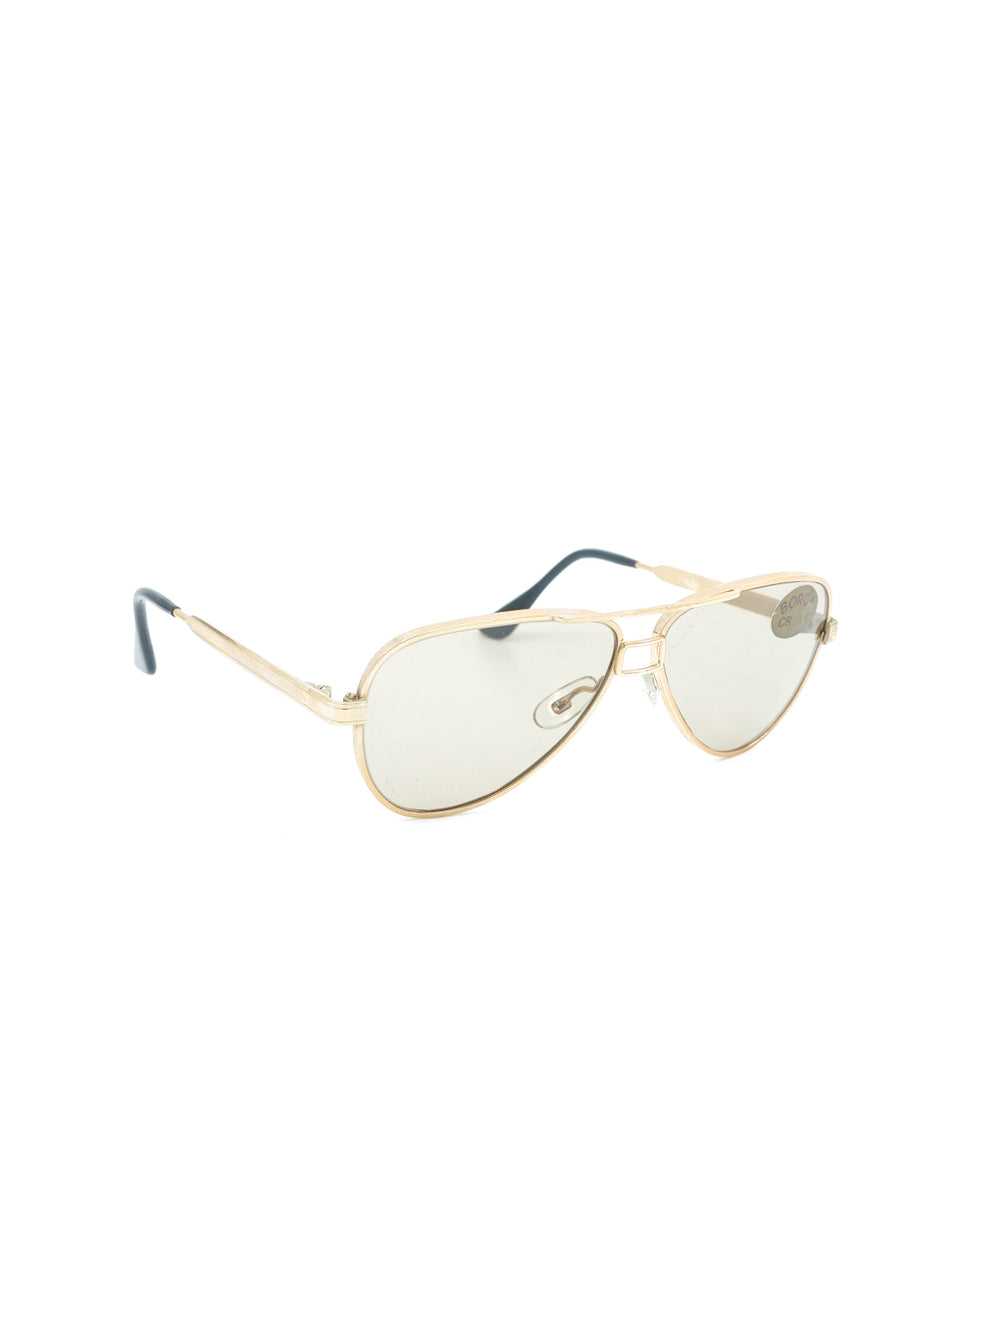 Gold Framed Aviator Sunglasses - image 3